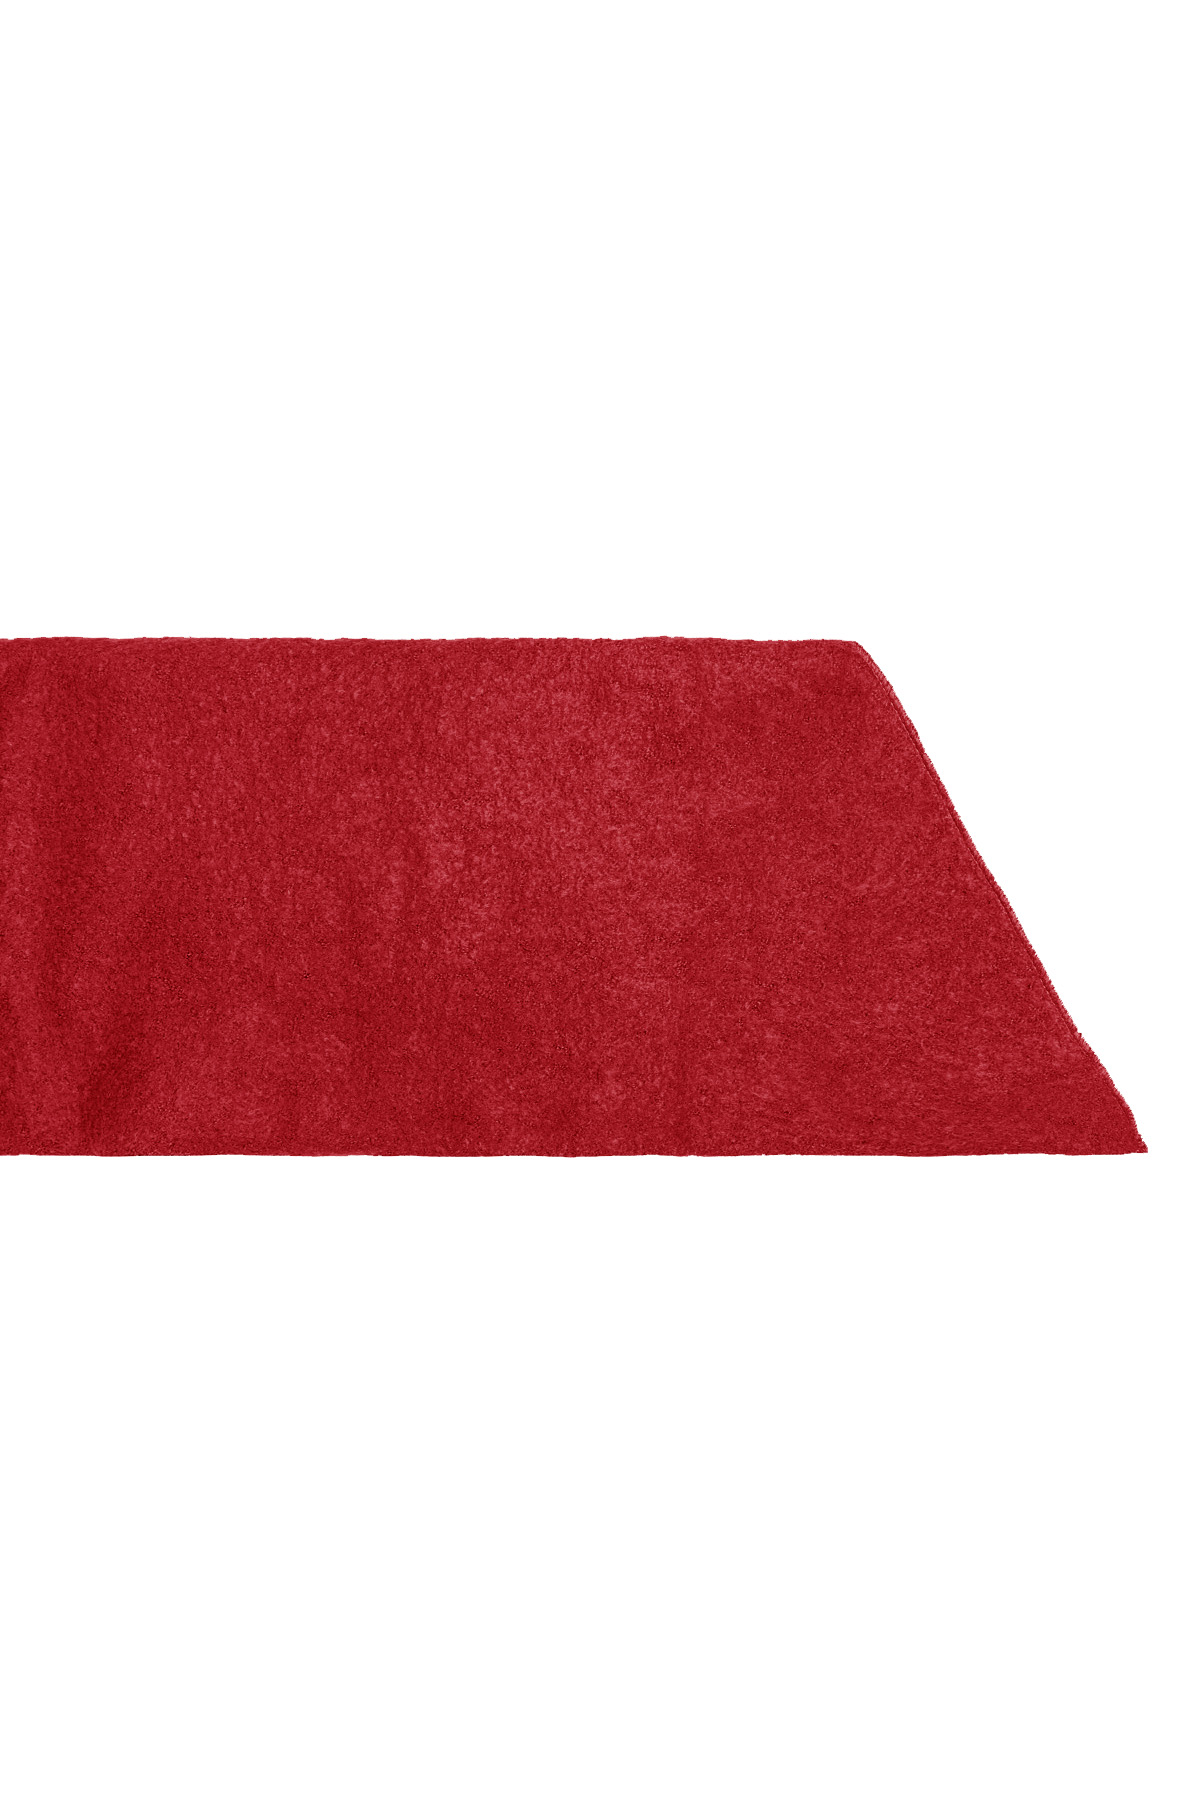 Tek Renkli Kışlık Eşarp - Kırmızı h5 Resim5